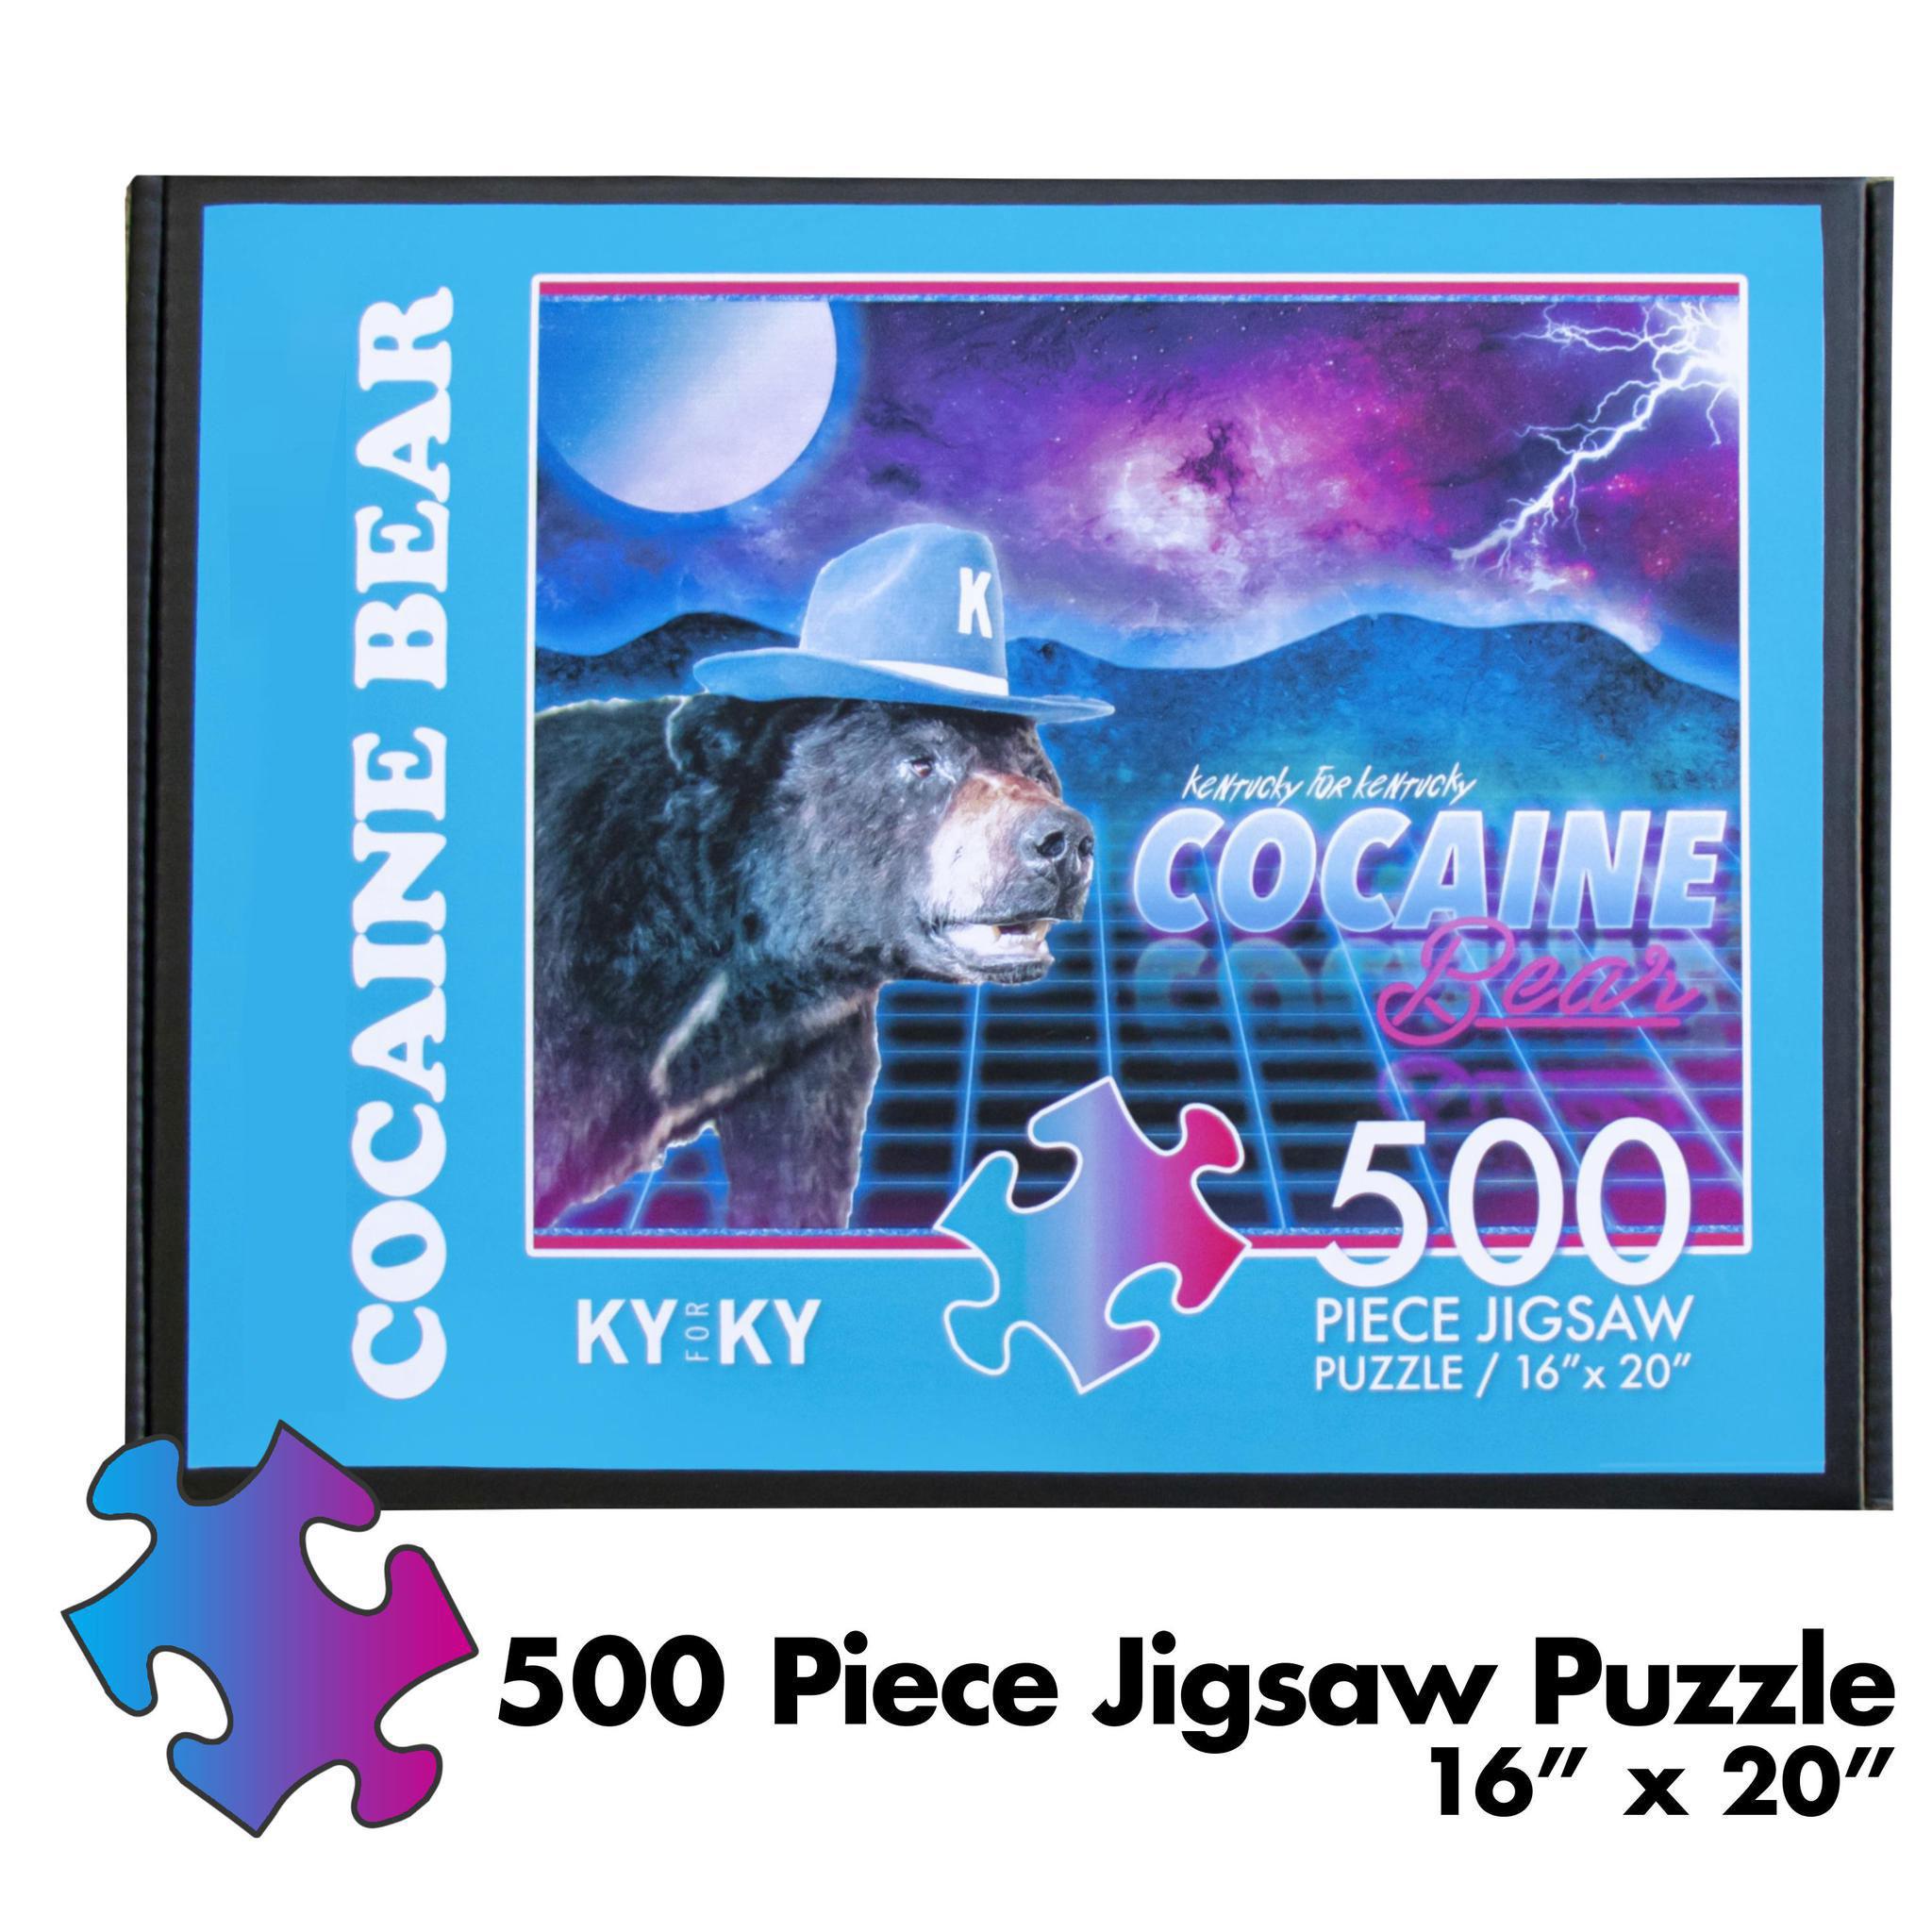 Cocaine Bear Puzzle